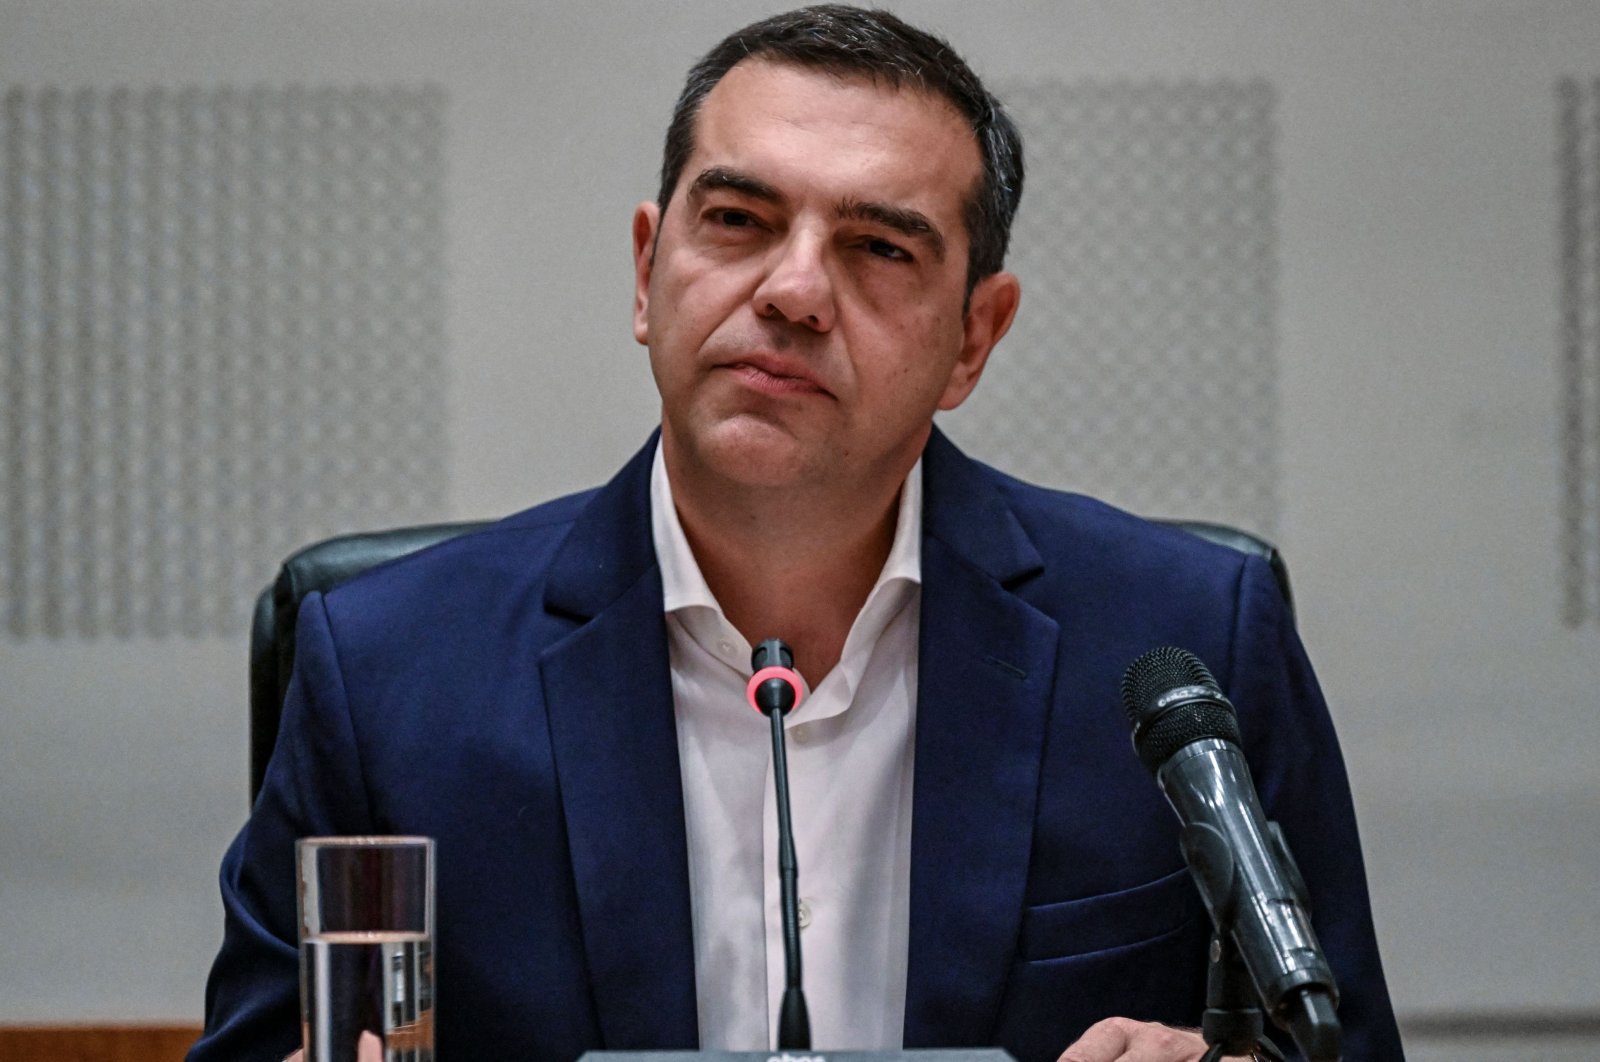 Tsipras dari Yunani mengundurkan diri sebagai pemimpin partai setelah kalah dalam pemilu